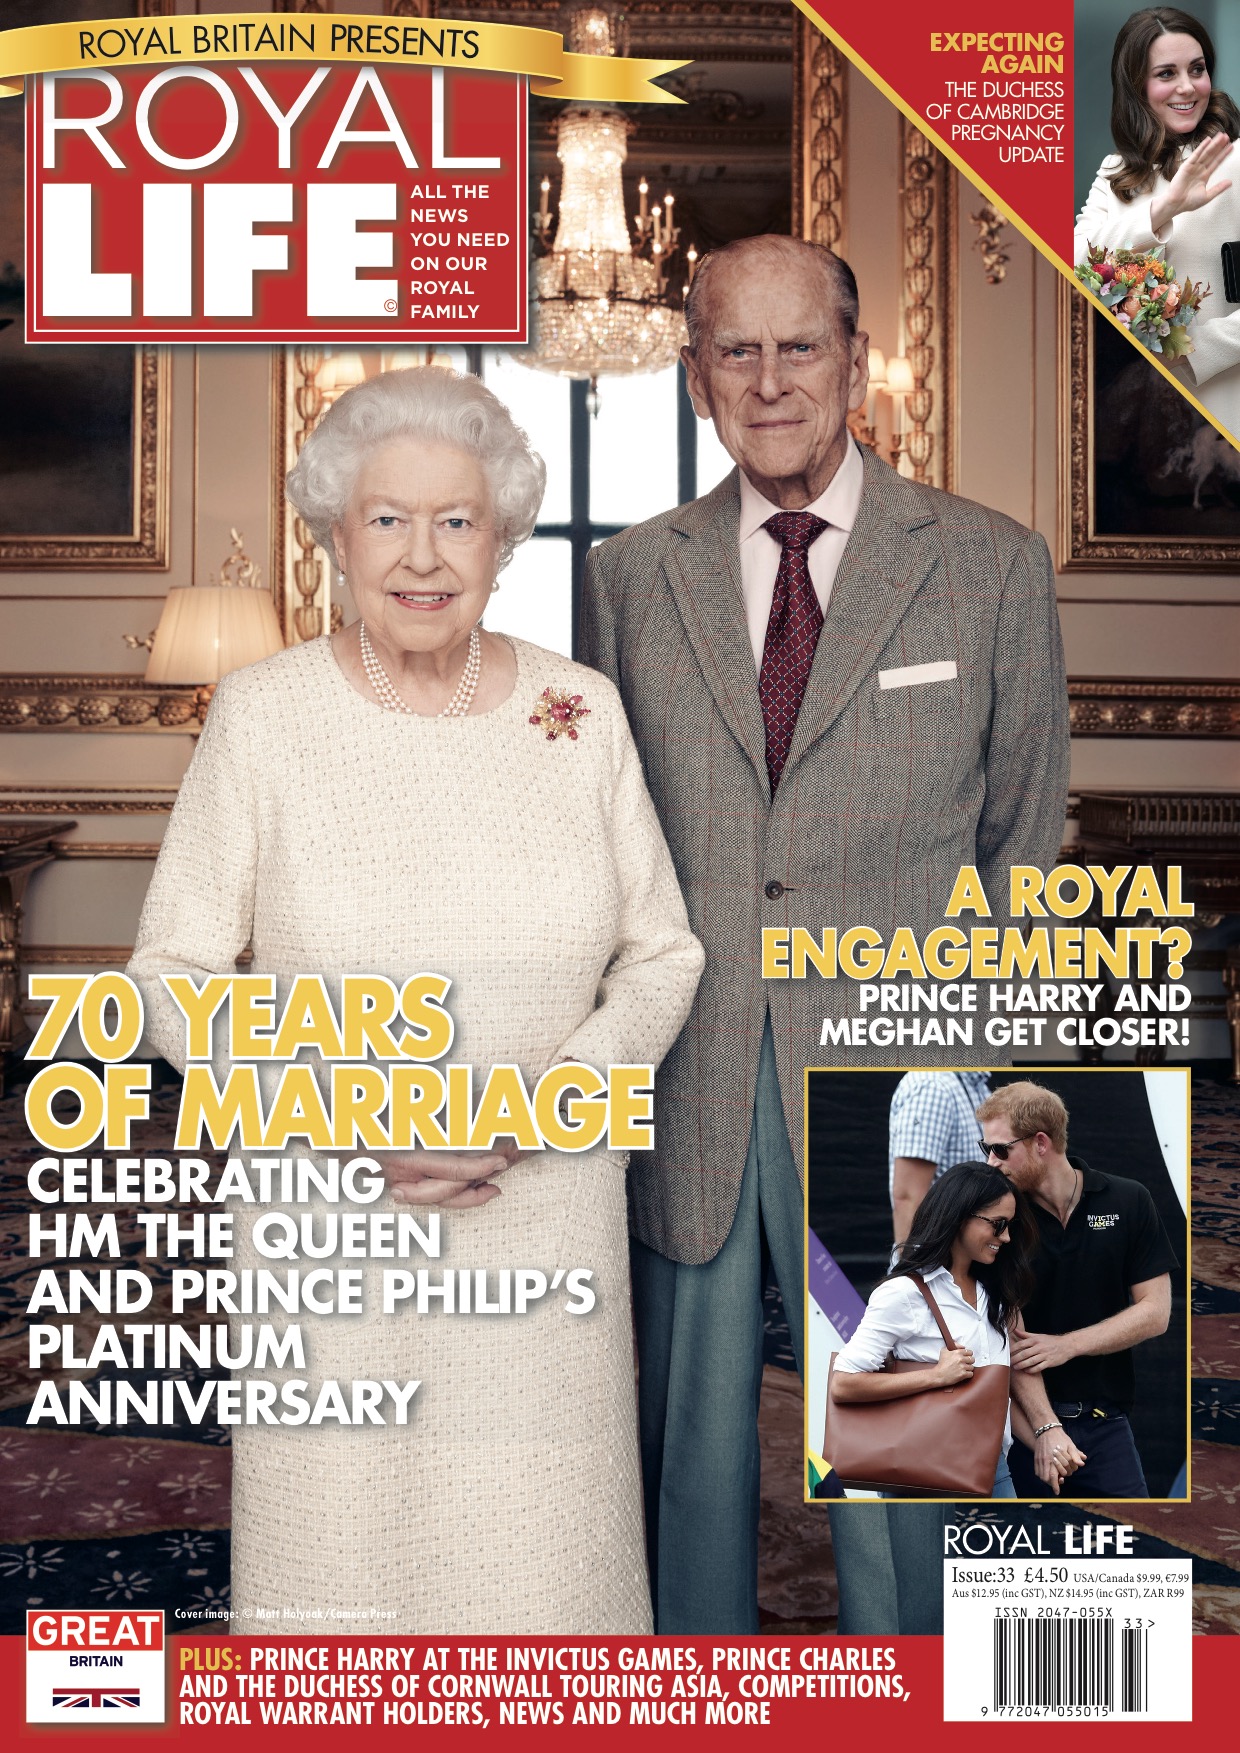 Royal Life Magazine - Issue 33